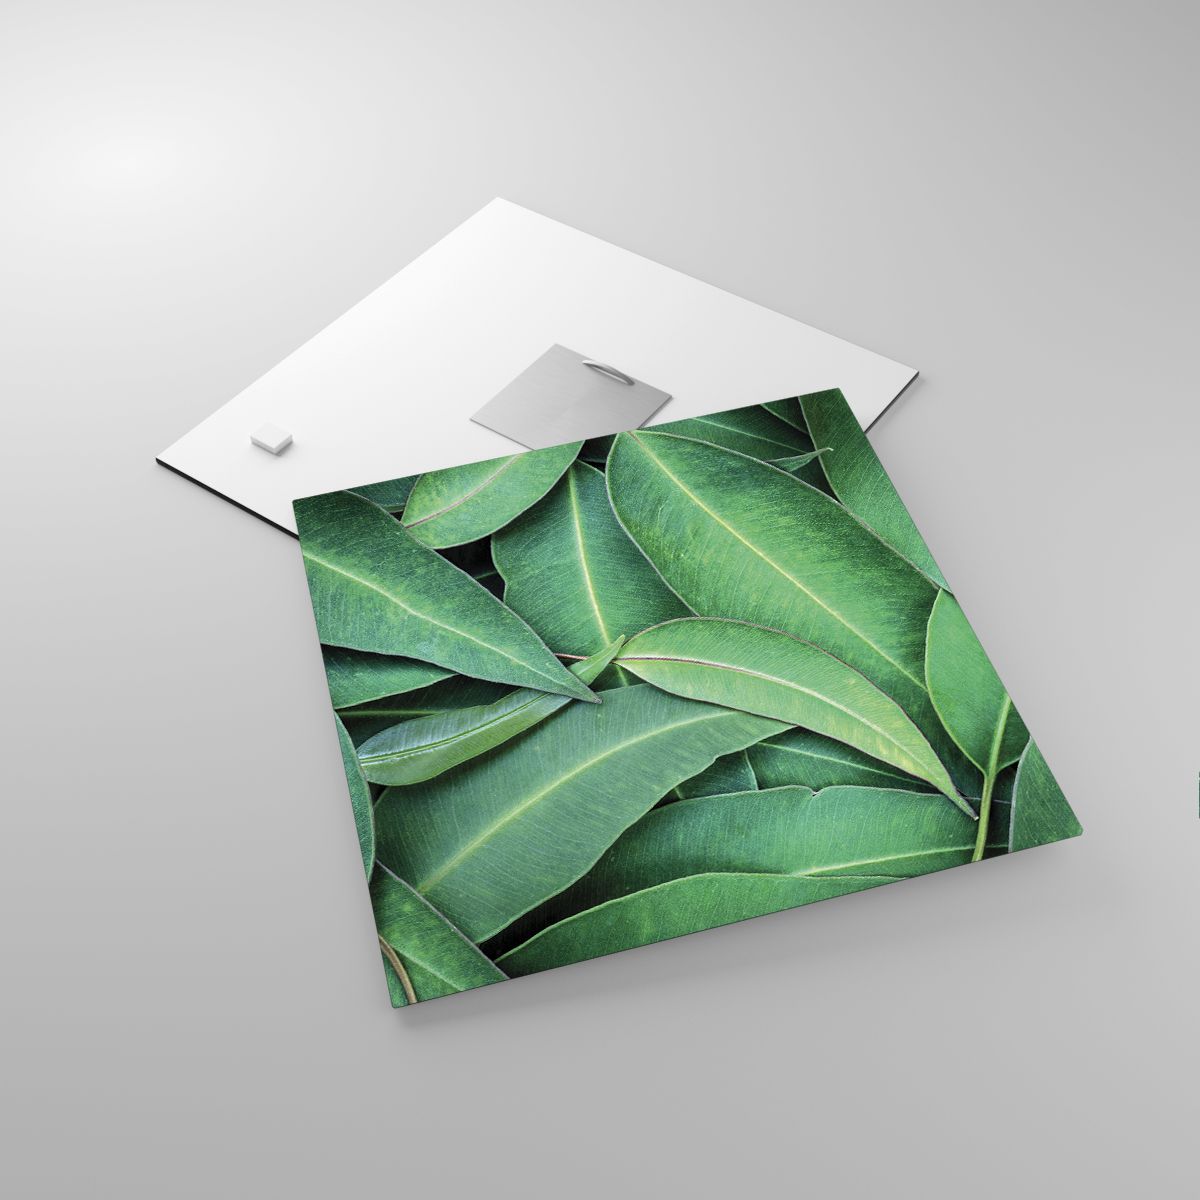 Glasbild Laub, Glasbild Eukalyptus, Glasbild Natur, Glasbild Tropische Pflanze, Glasbild Flora